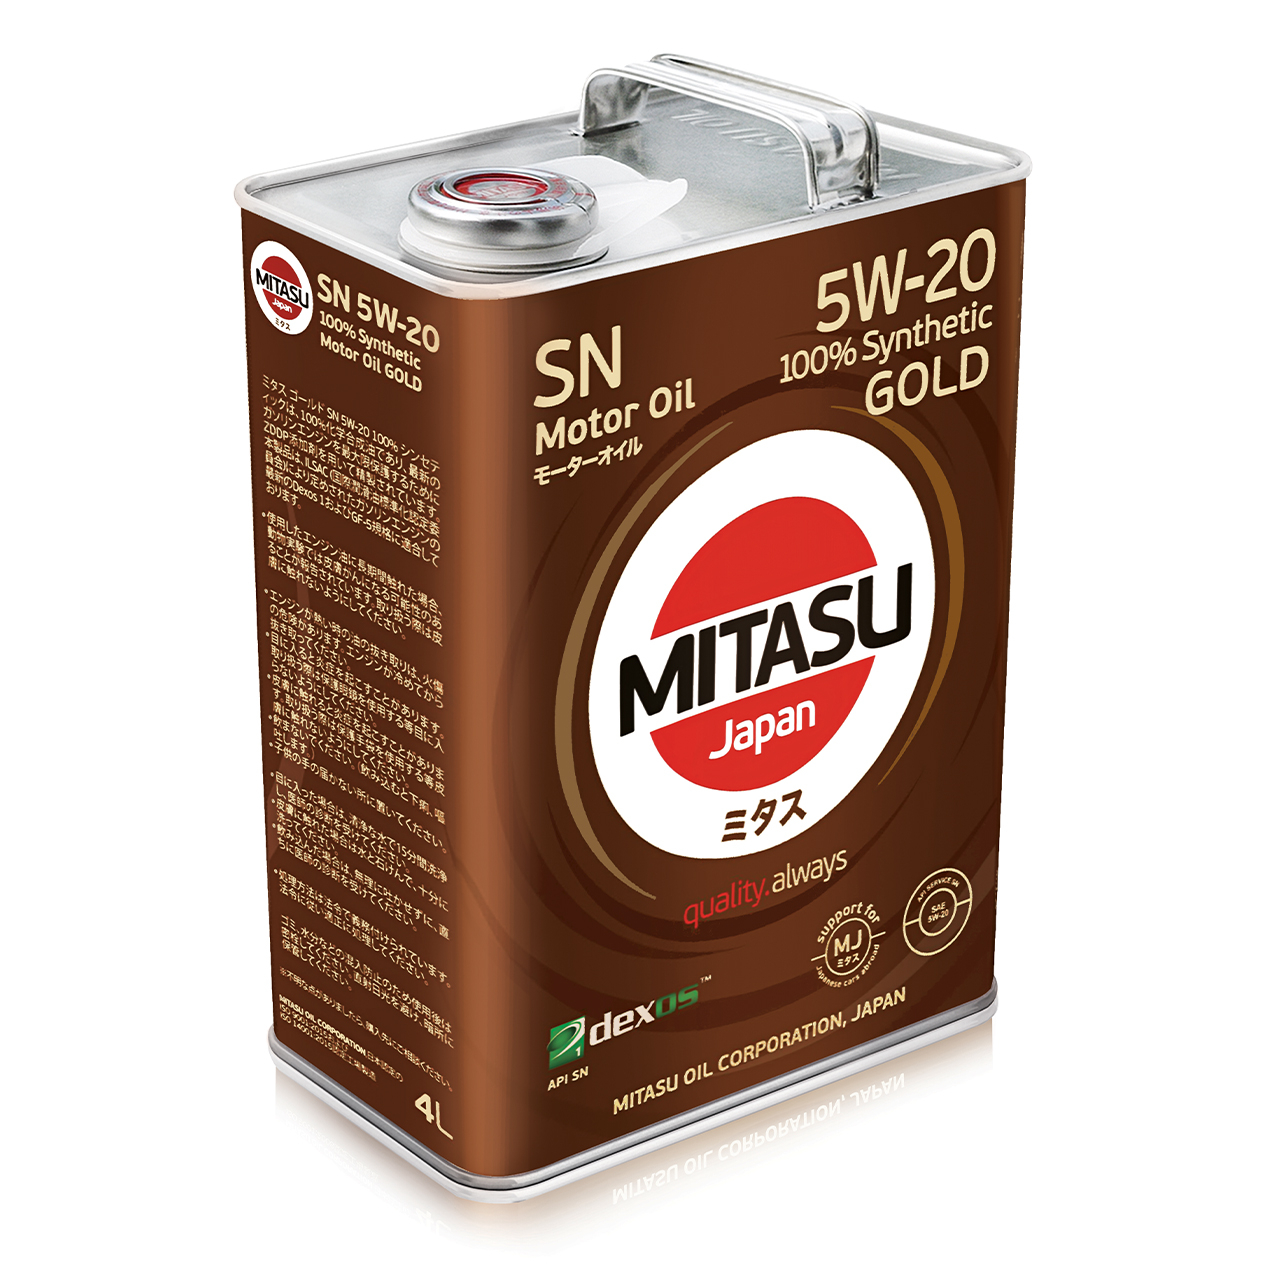 Купить запчасть MITASU - MJ1004 Масло моторное MITASU GOLD SN 5w20 4л синтетическое для бензиновых двигателей MJ100 (1/6) Япония